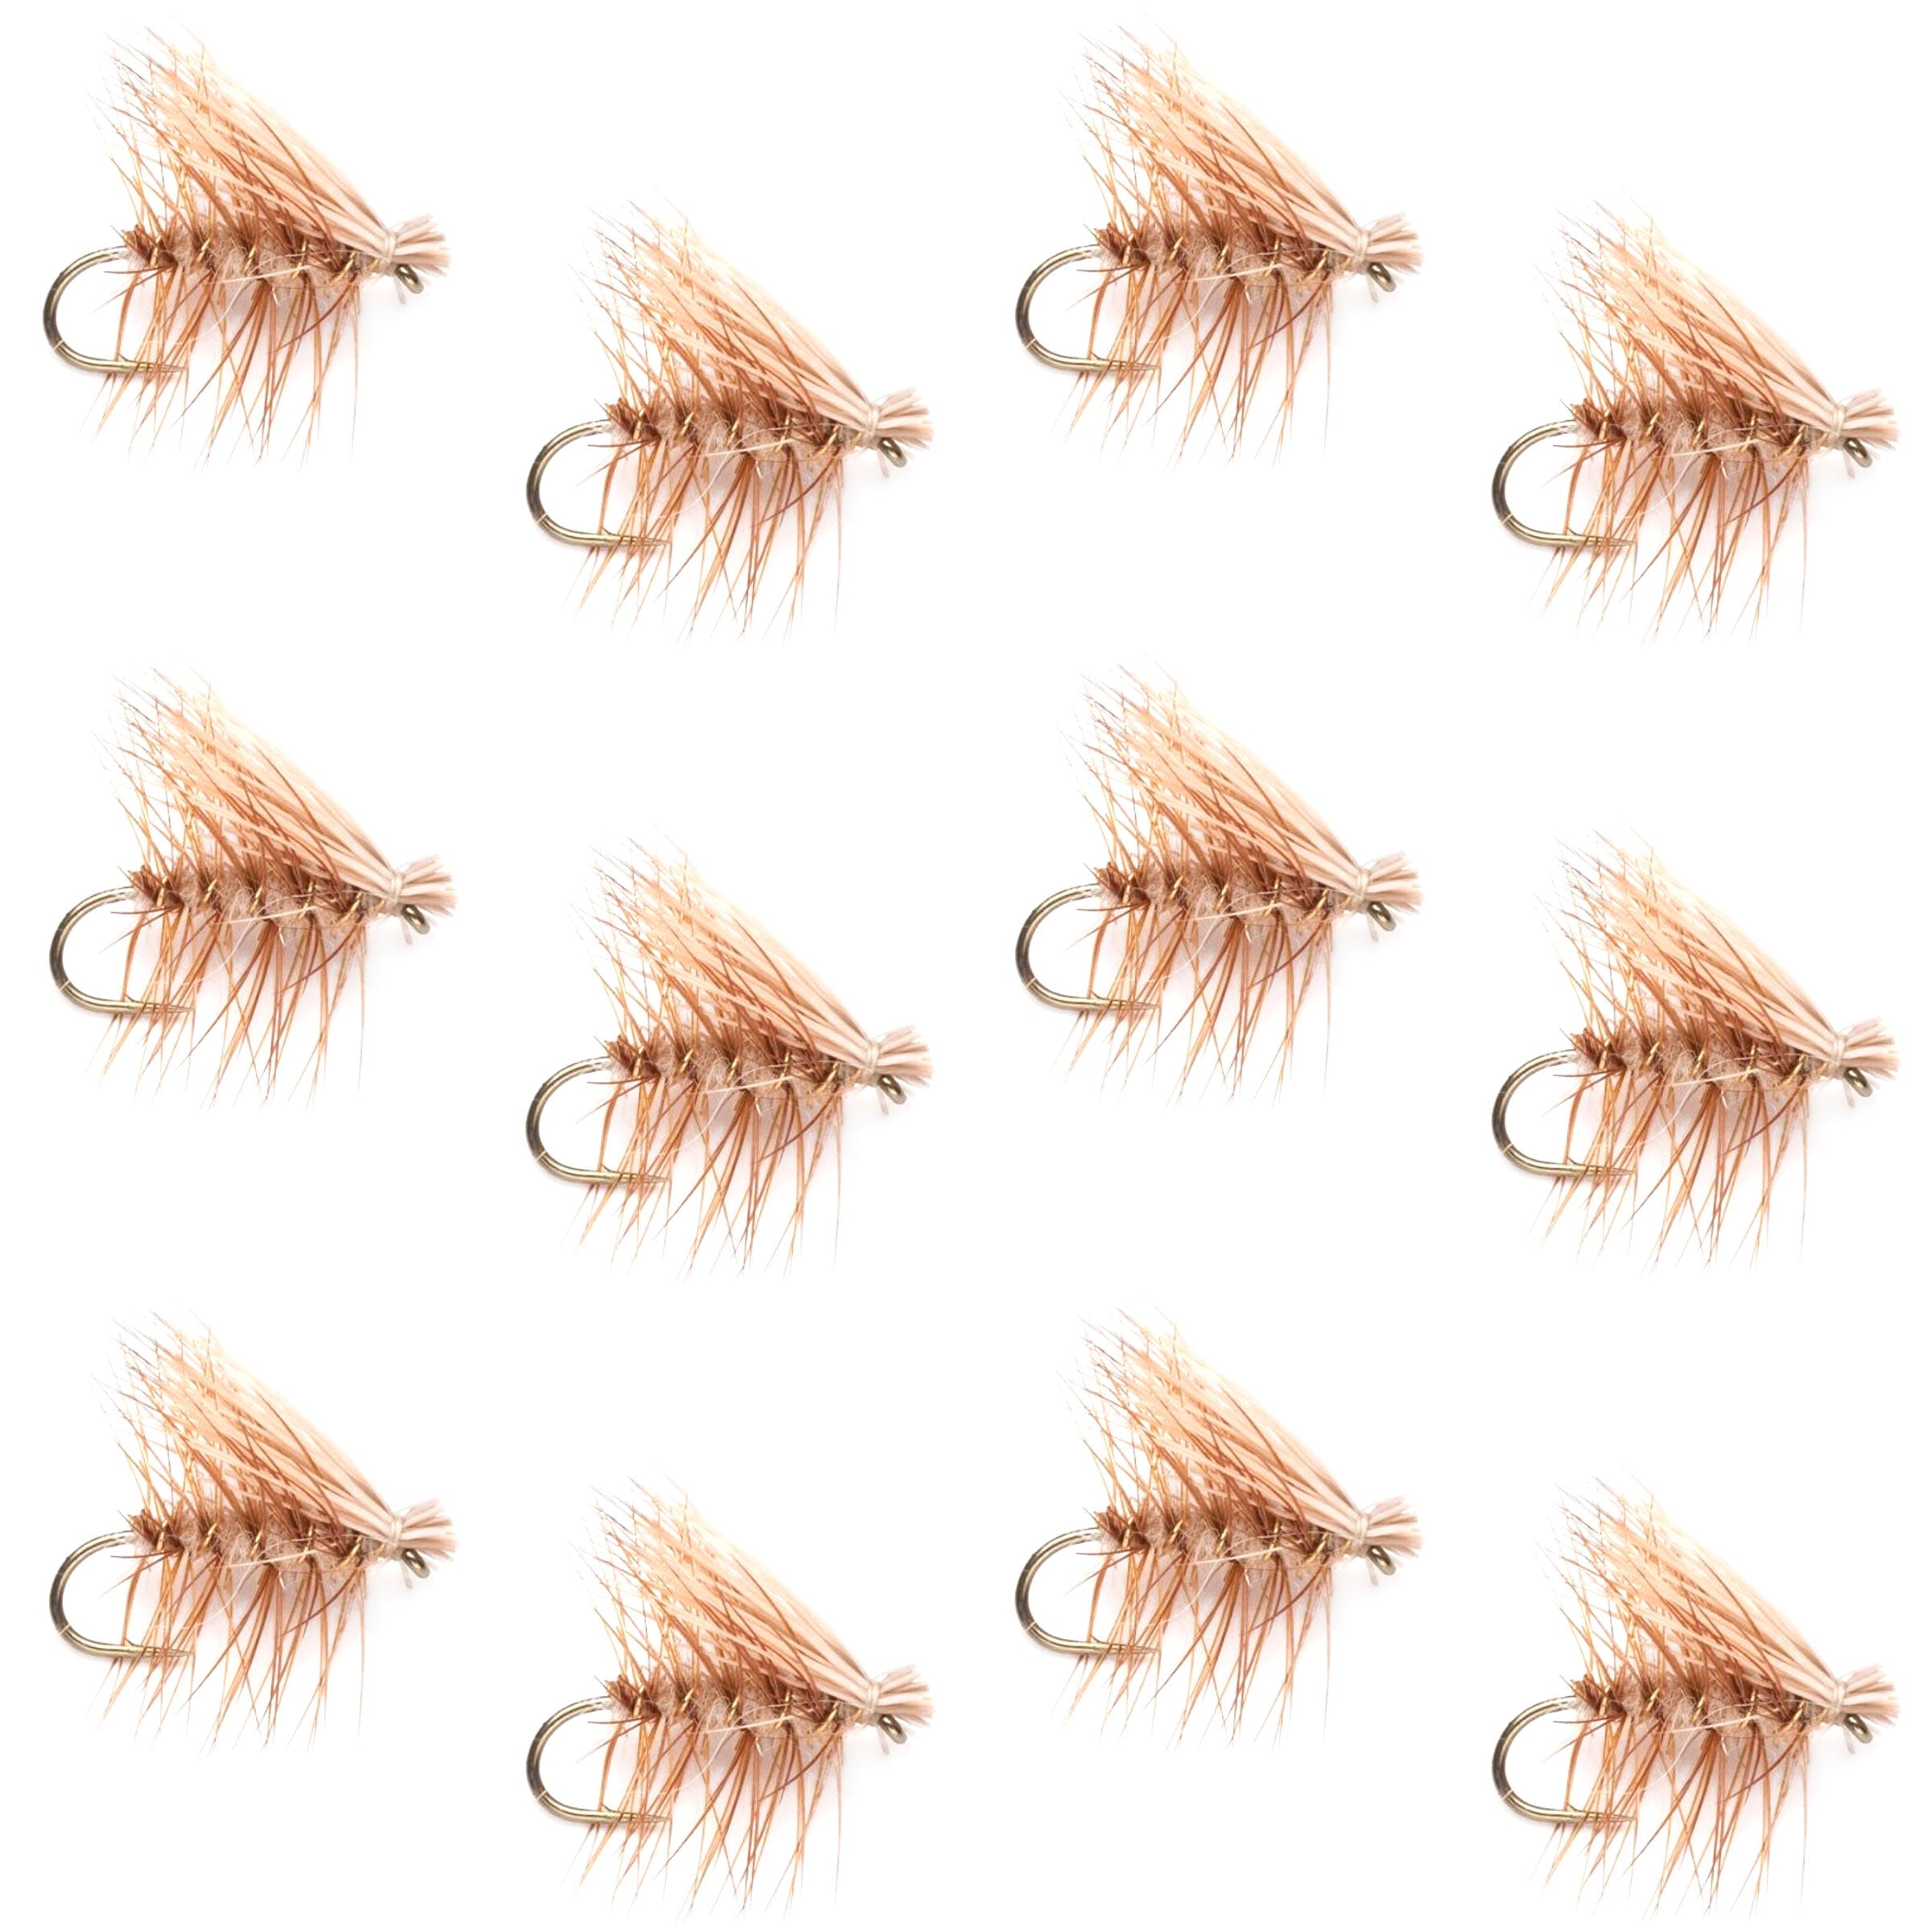 Barbless Tan Elk Hair Caddis Classic Trout Dry Flies 1 Dozen Flies Size 14